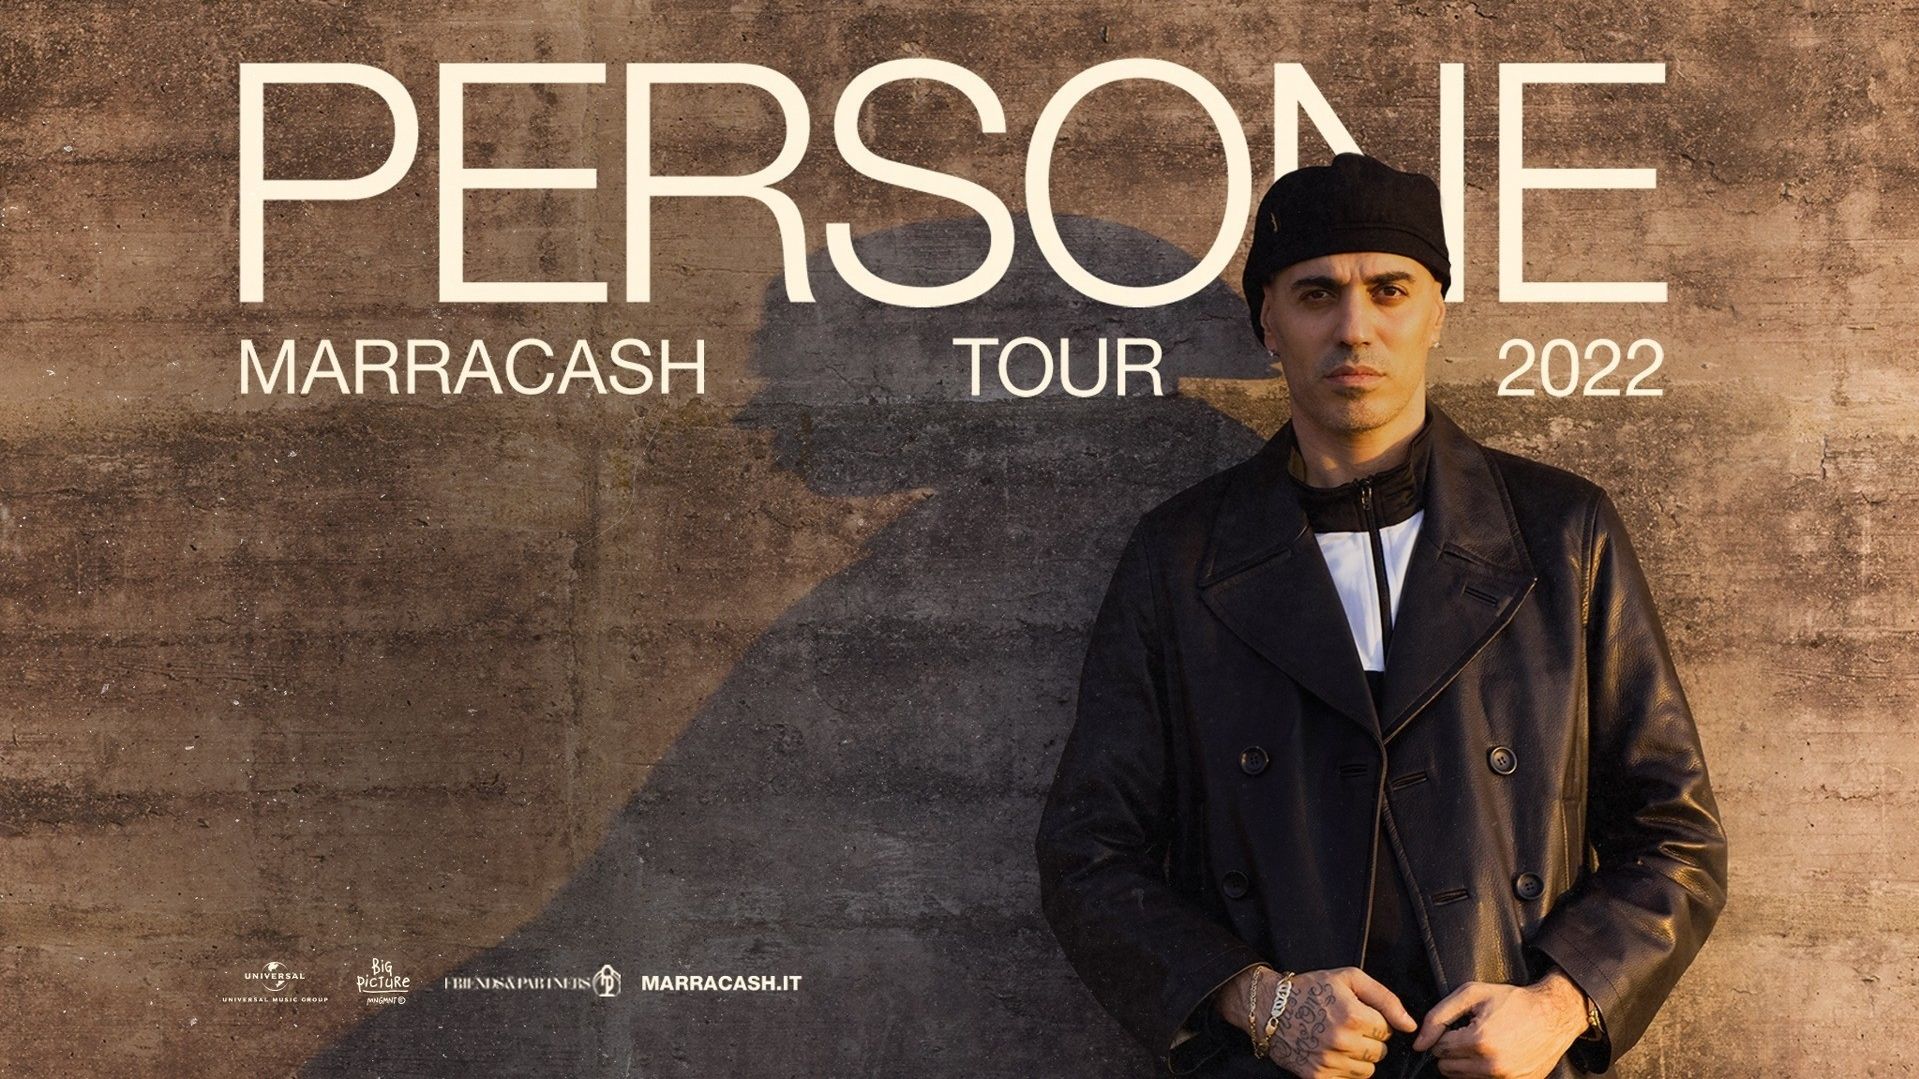 Marracash "Persone Tour"